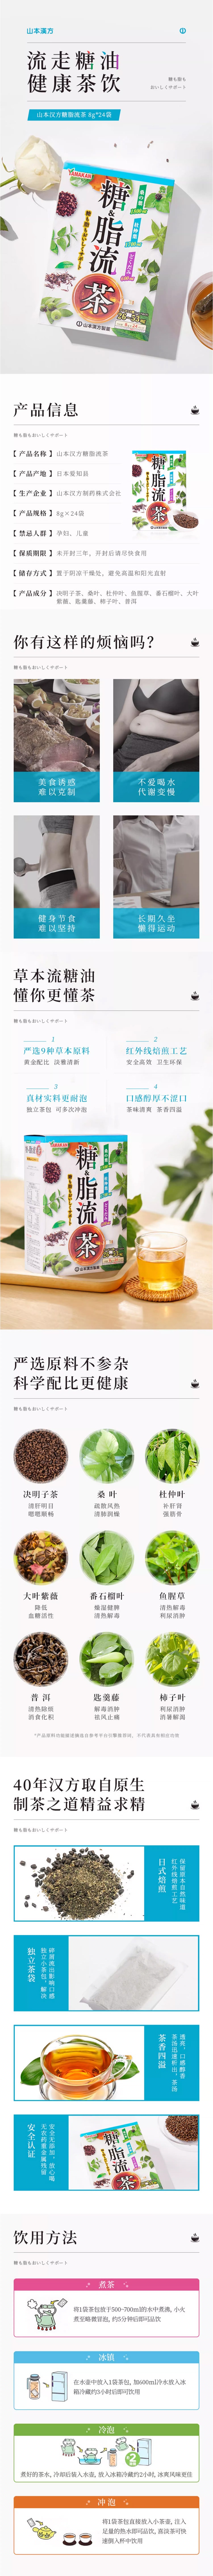 【日本直邮】YAMAMOTO山本汉方制药 养生茶去油腻清理肠道糖&脂流茶 8gx24包